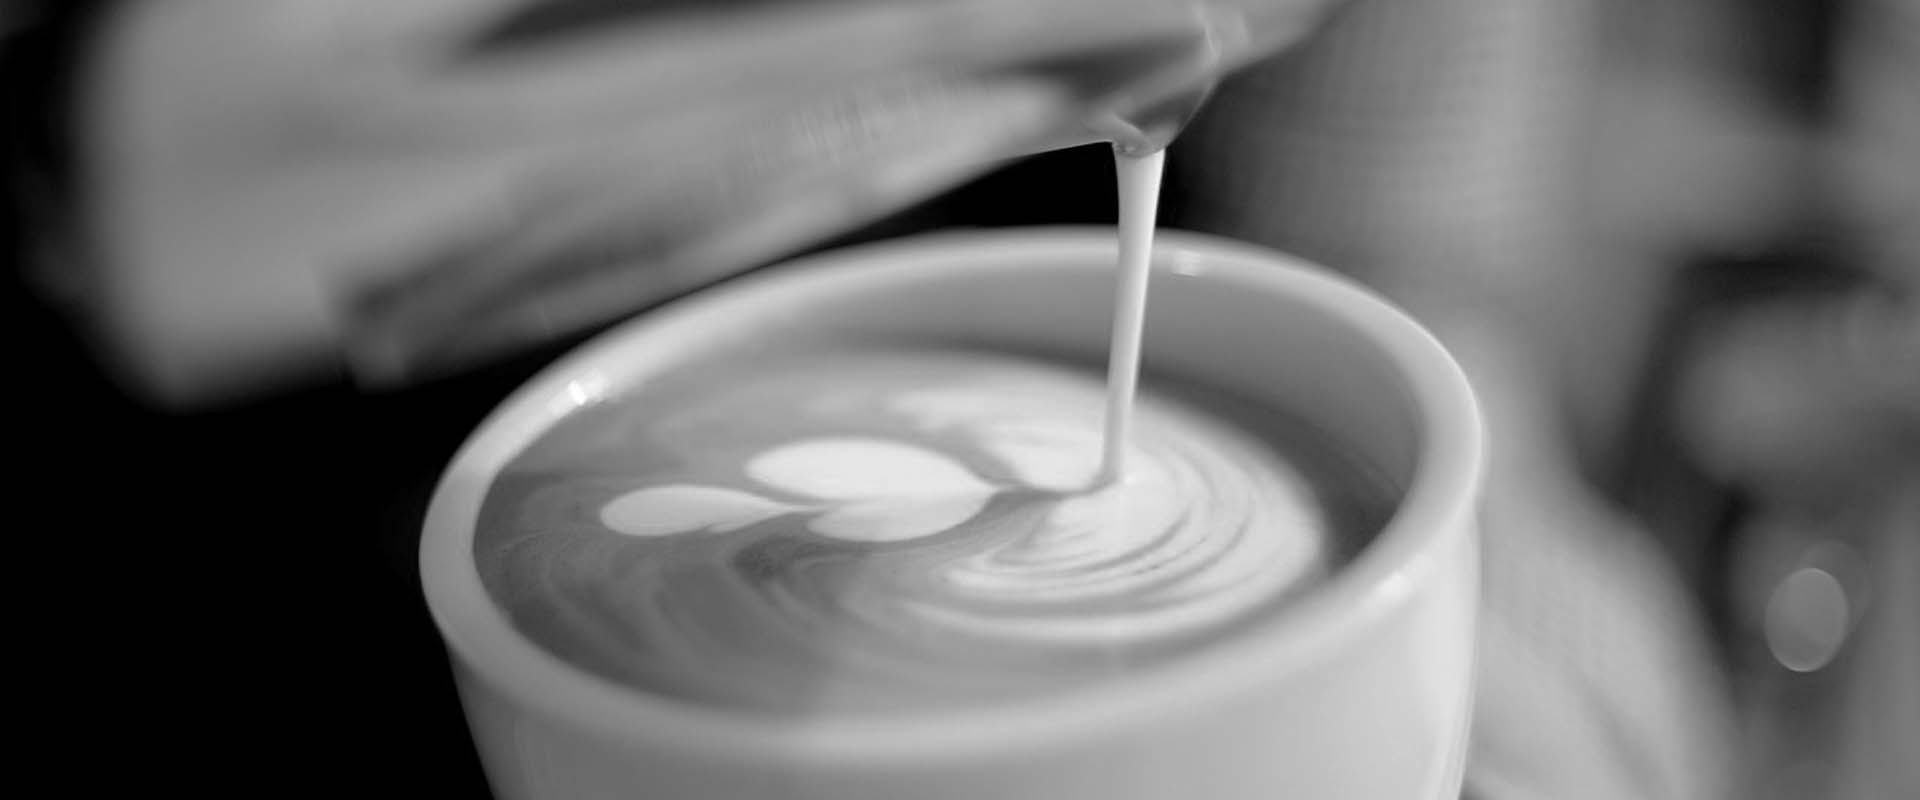 latte art schenken